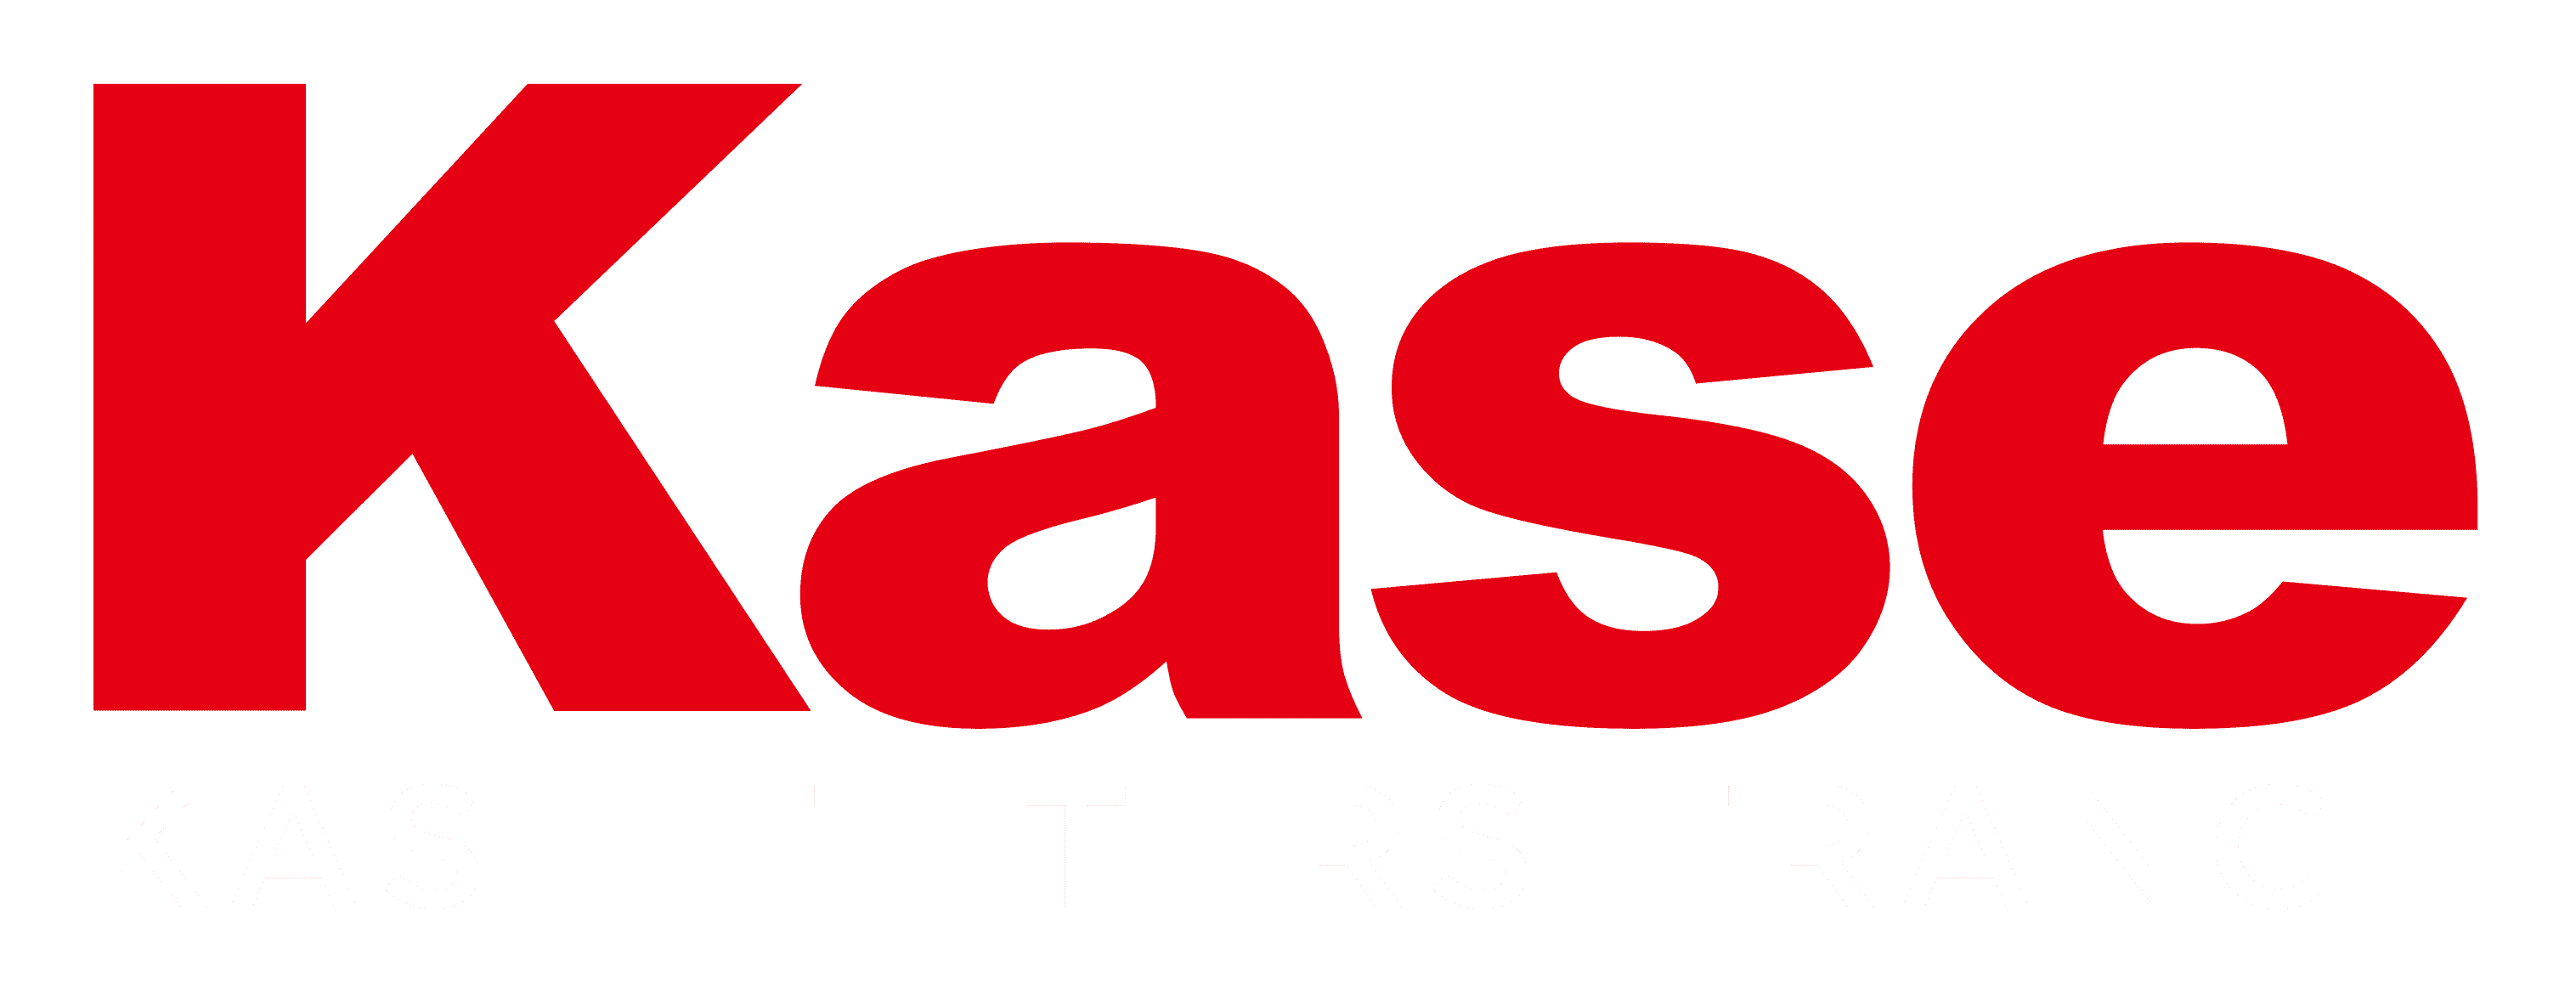 Kase Filters France